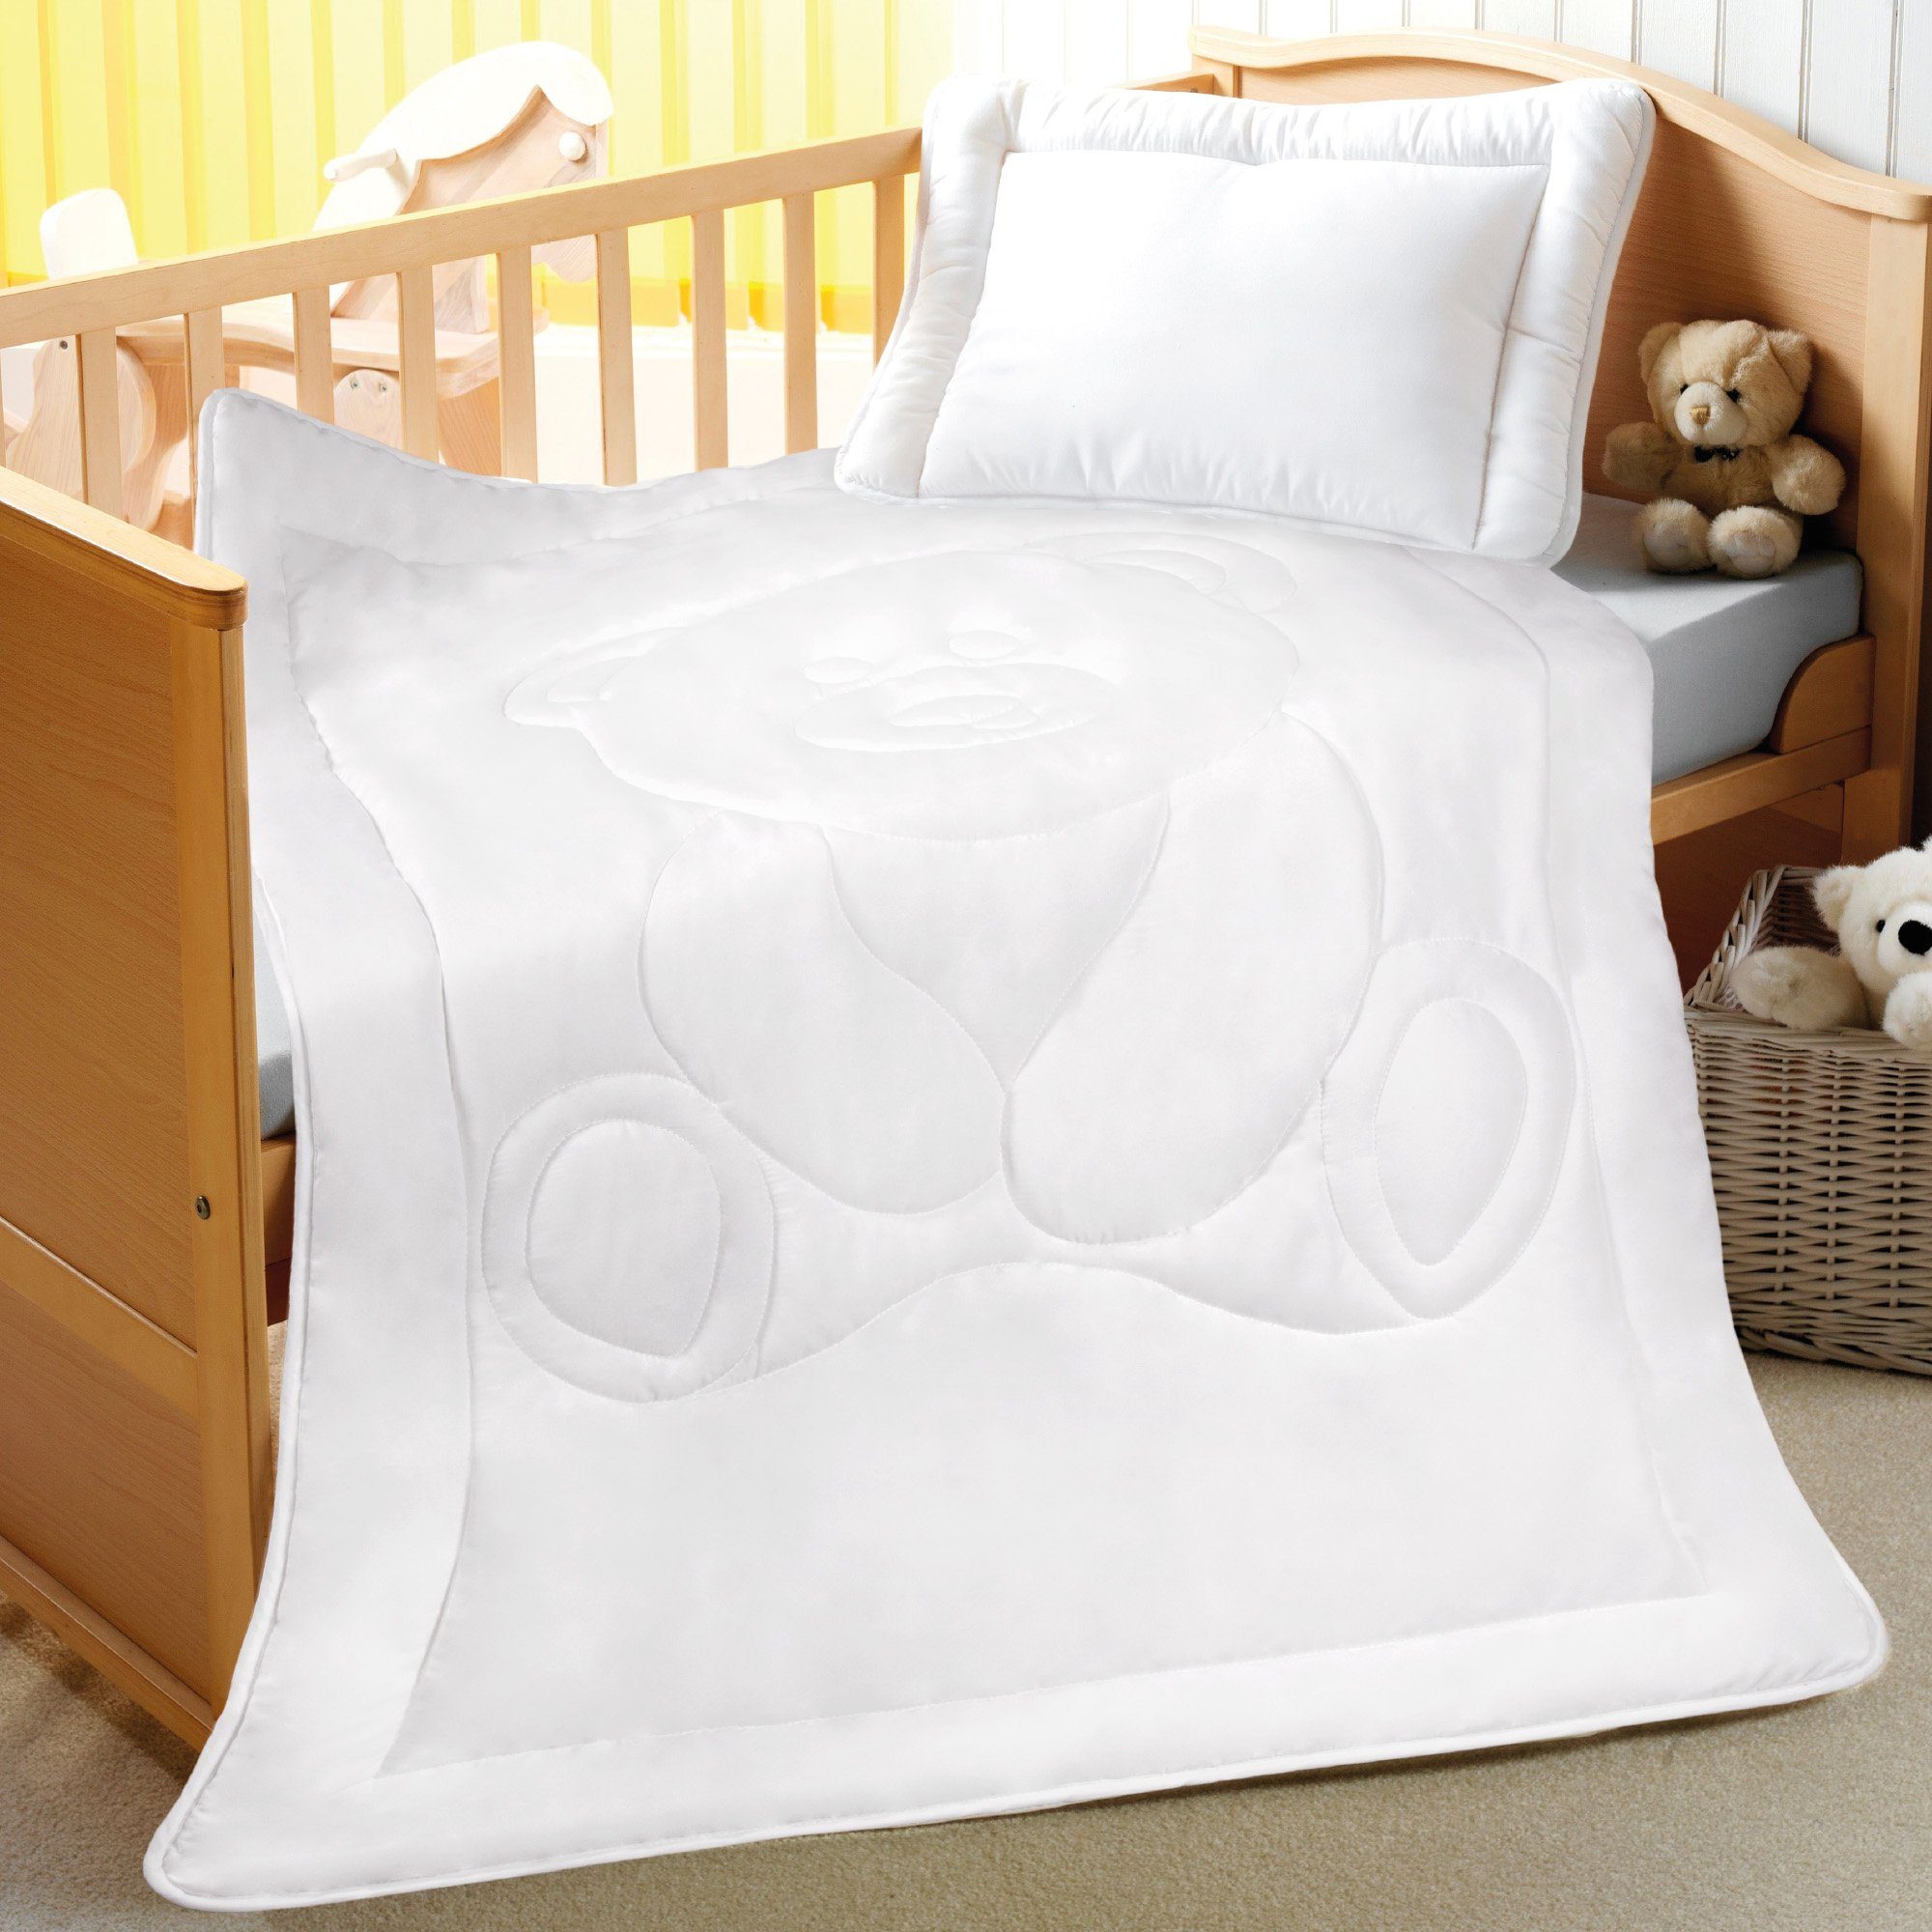 Kinderbettdecke + Kopfkissen, Bettenset für Kinder, Bestlivings, Füllung: Polyester, Kinder Betten Set, Bettdecke 100x135cm + 40x60cm, Kinderdecke